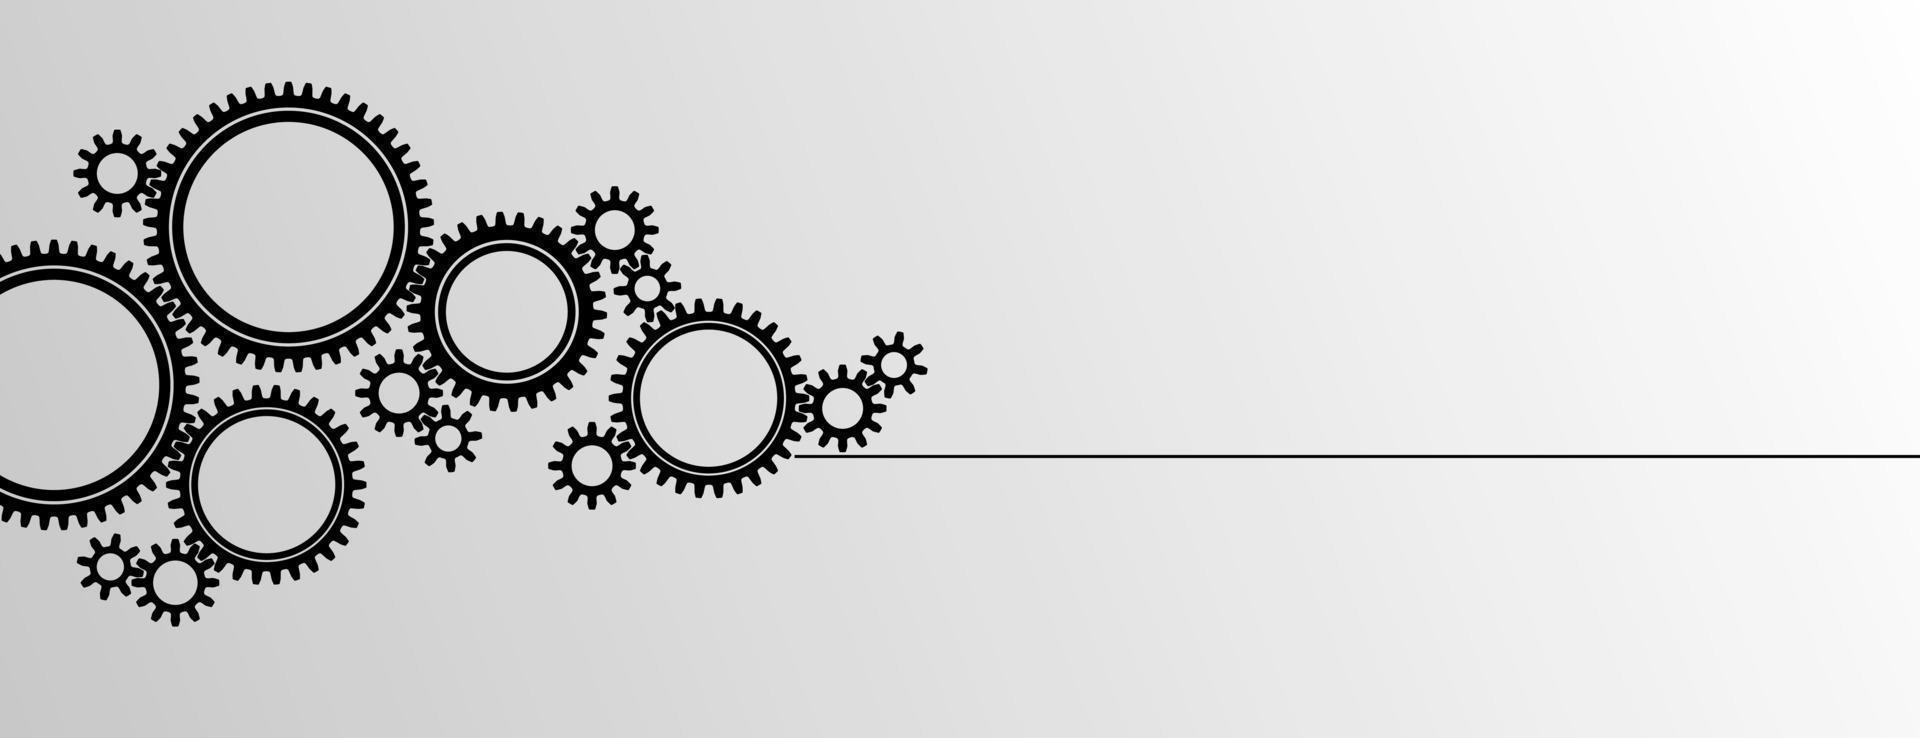 bannière de groupe de roue dentée mécanique. petits et grands pignons. élément de conception d'icône d'engrenage de silhouette noire. fond blanc. illustration vectorielle. vecteur